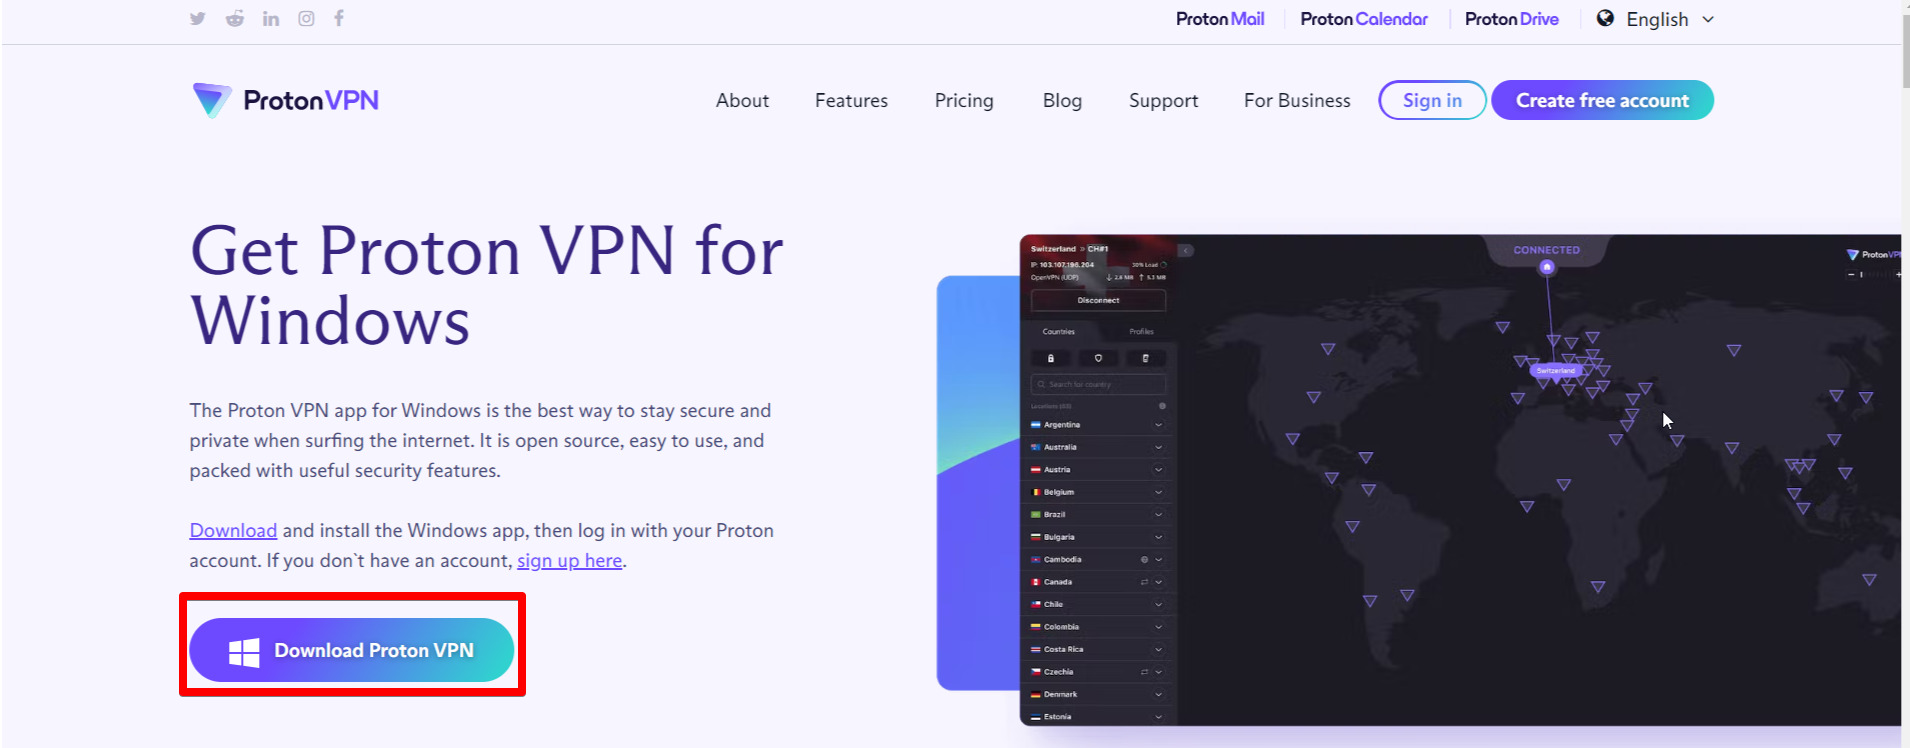 Proton-VPN-download-in-UAE